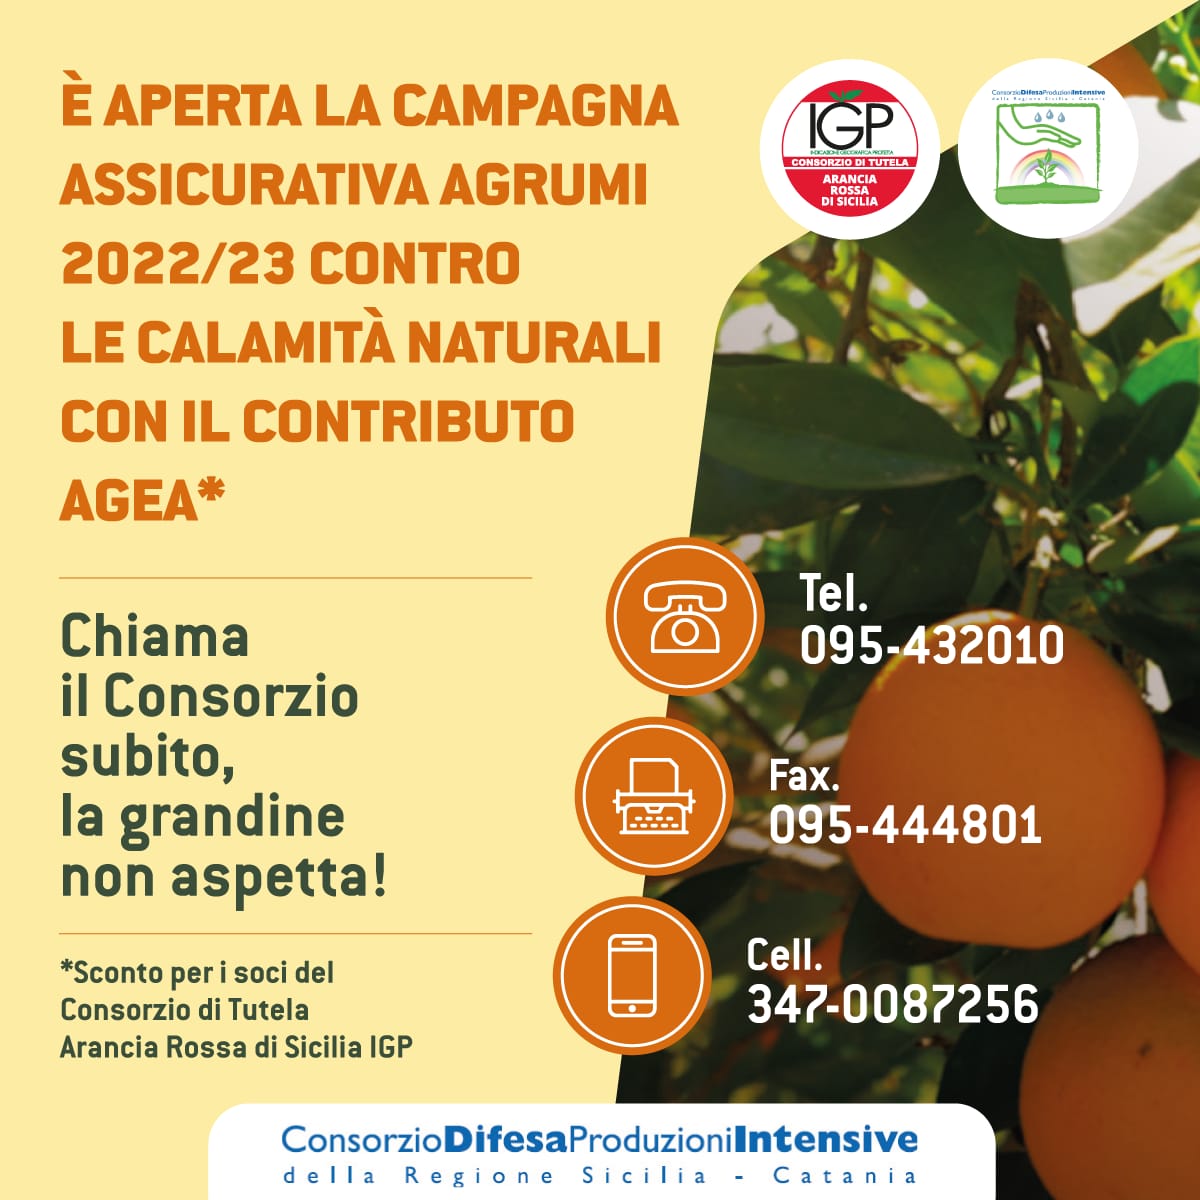 Convenzione Campagna Assicurativa Agevolata “Invernale Agrumi 2022-23”